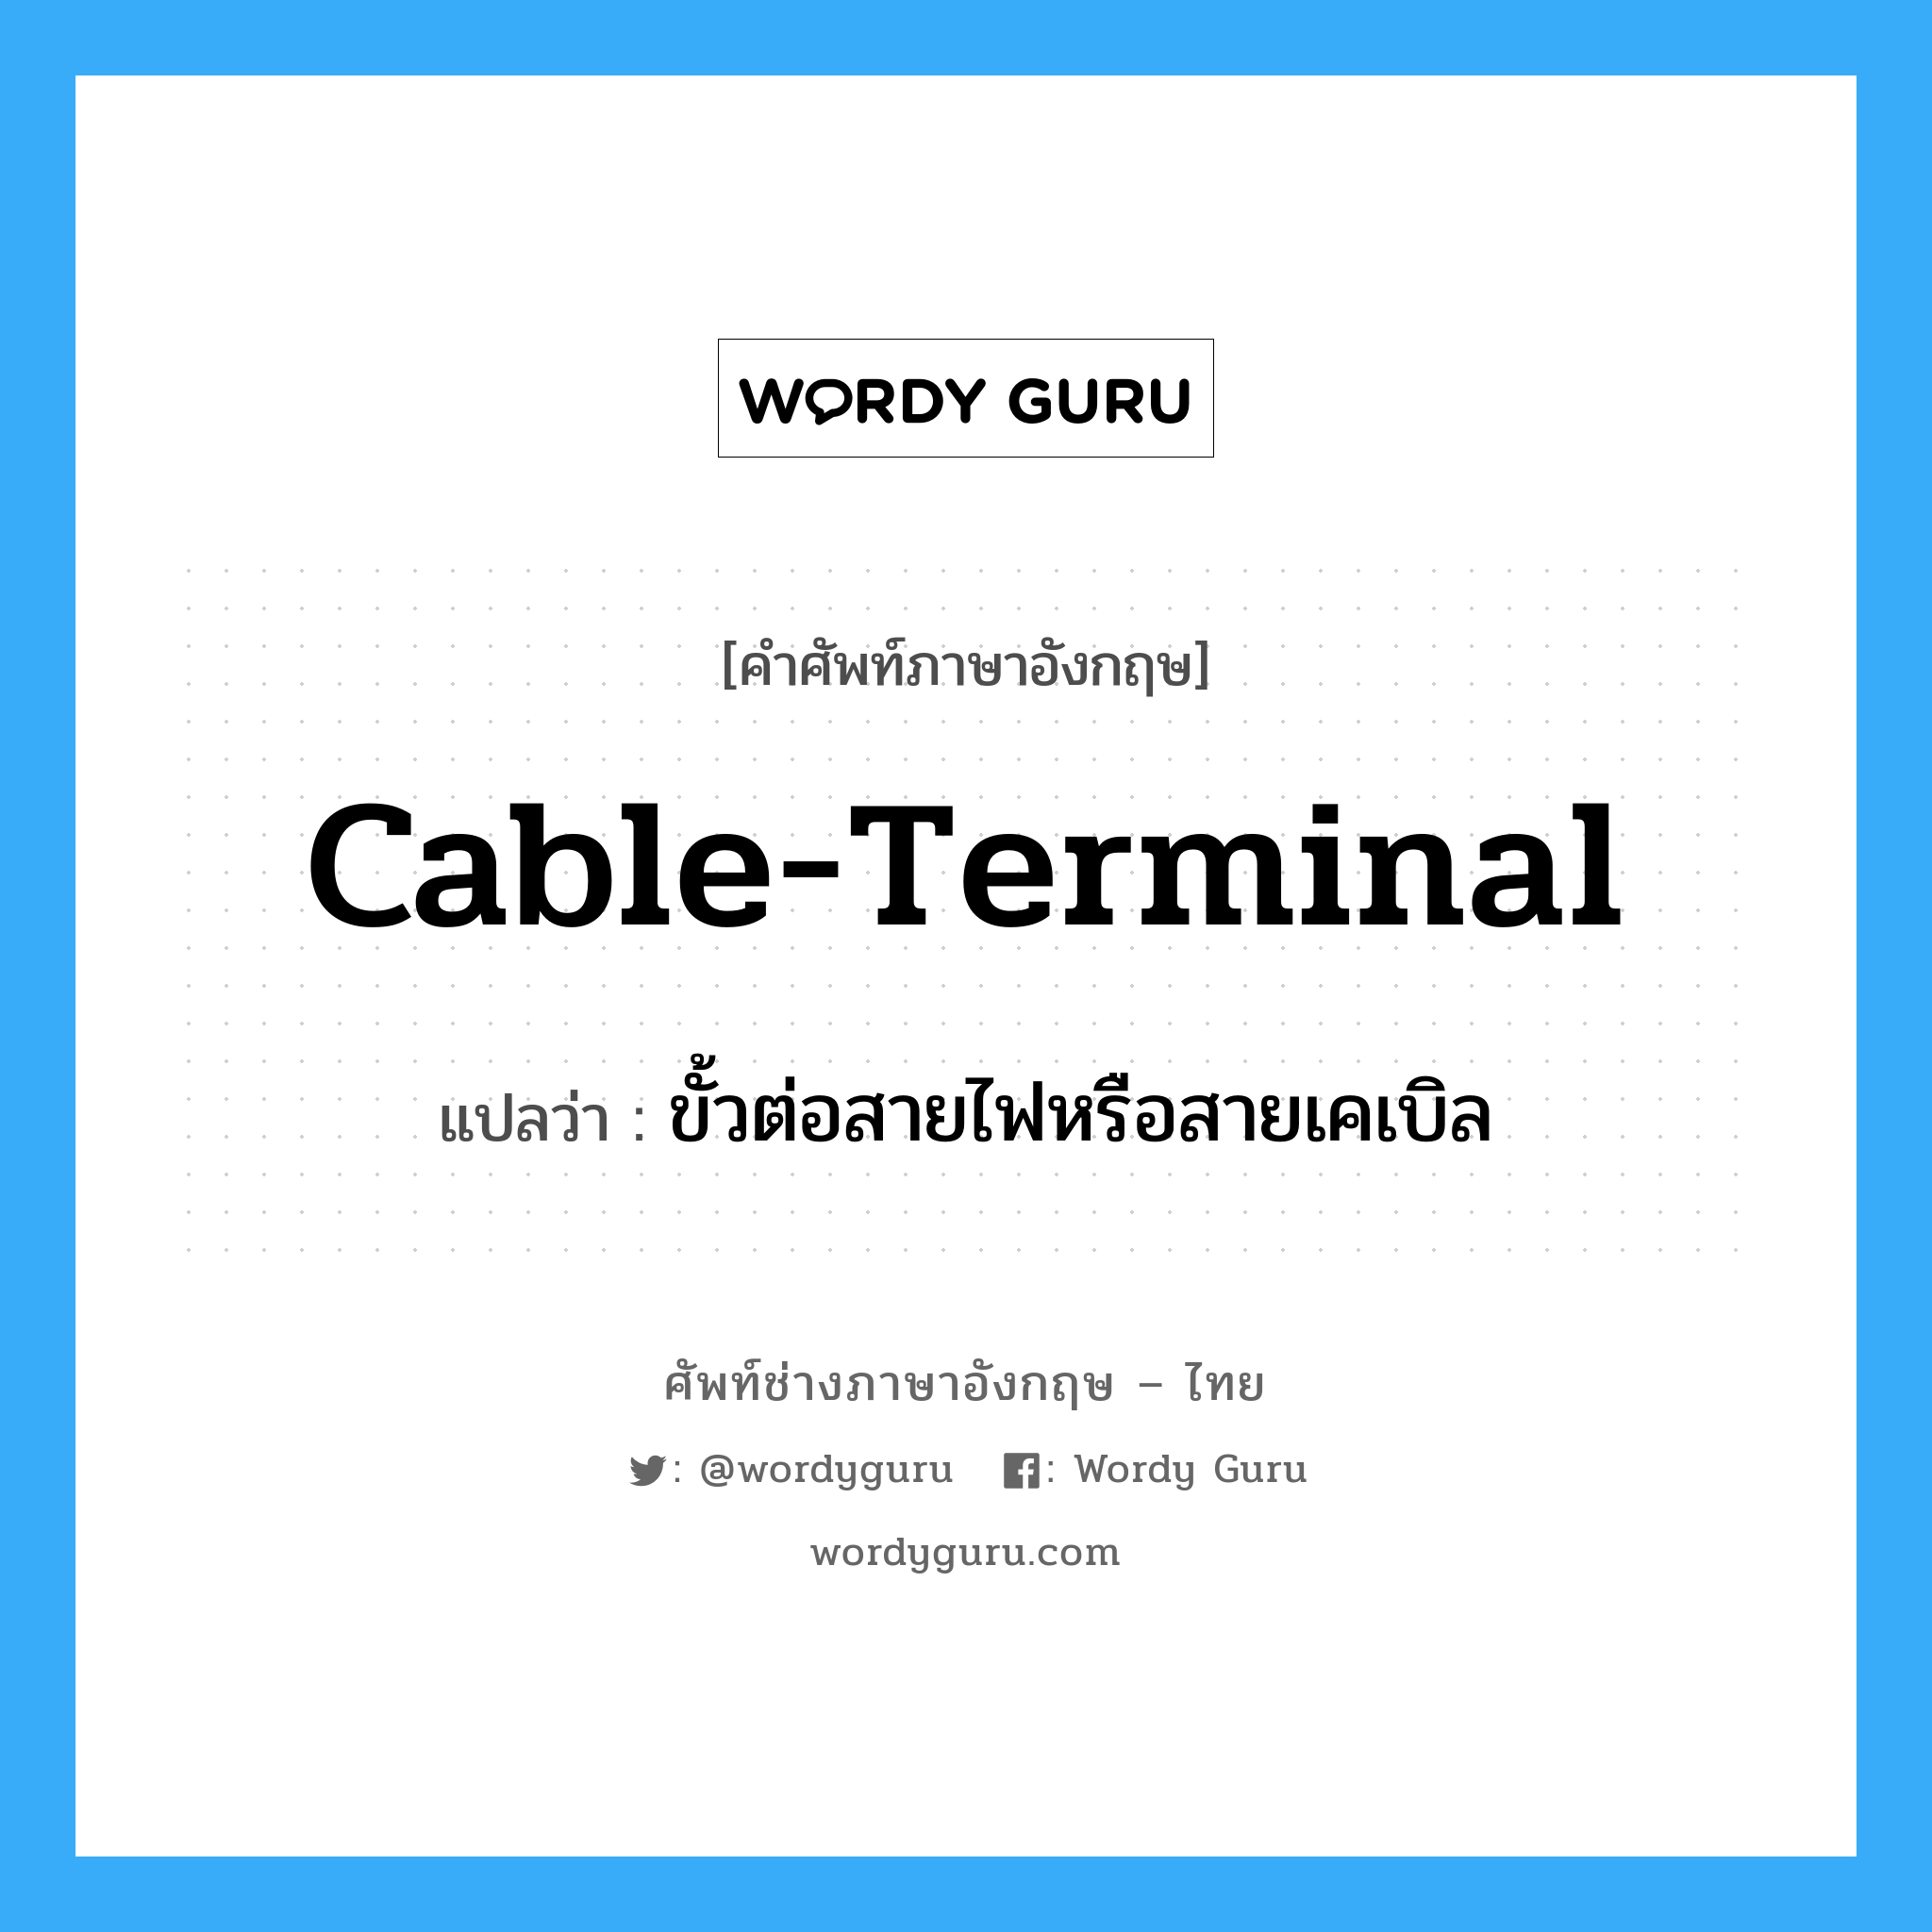 ขั้วต่อสายไฟหรือสายเคเบิล ภาษาอังกฤษ?, คำศัพท์ช่างภาษาอังกฤษ - ไทย ขั้วต่อสายไฟหรือสายเคเบิล คำศัพท์ภาษาอังกฤษ ขั้วต่อสายไฟหรือสายเคเบิล แปลว่า cable-terminal